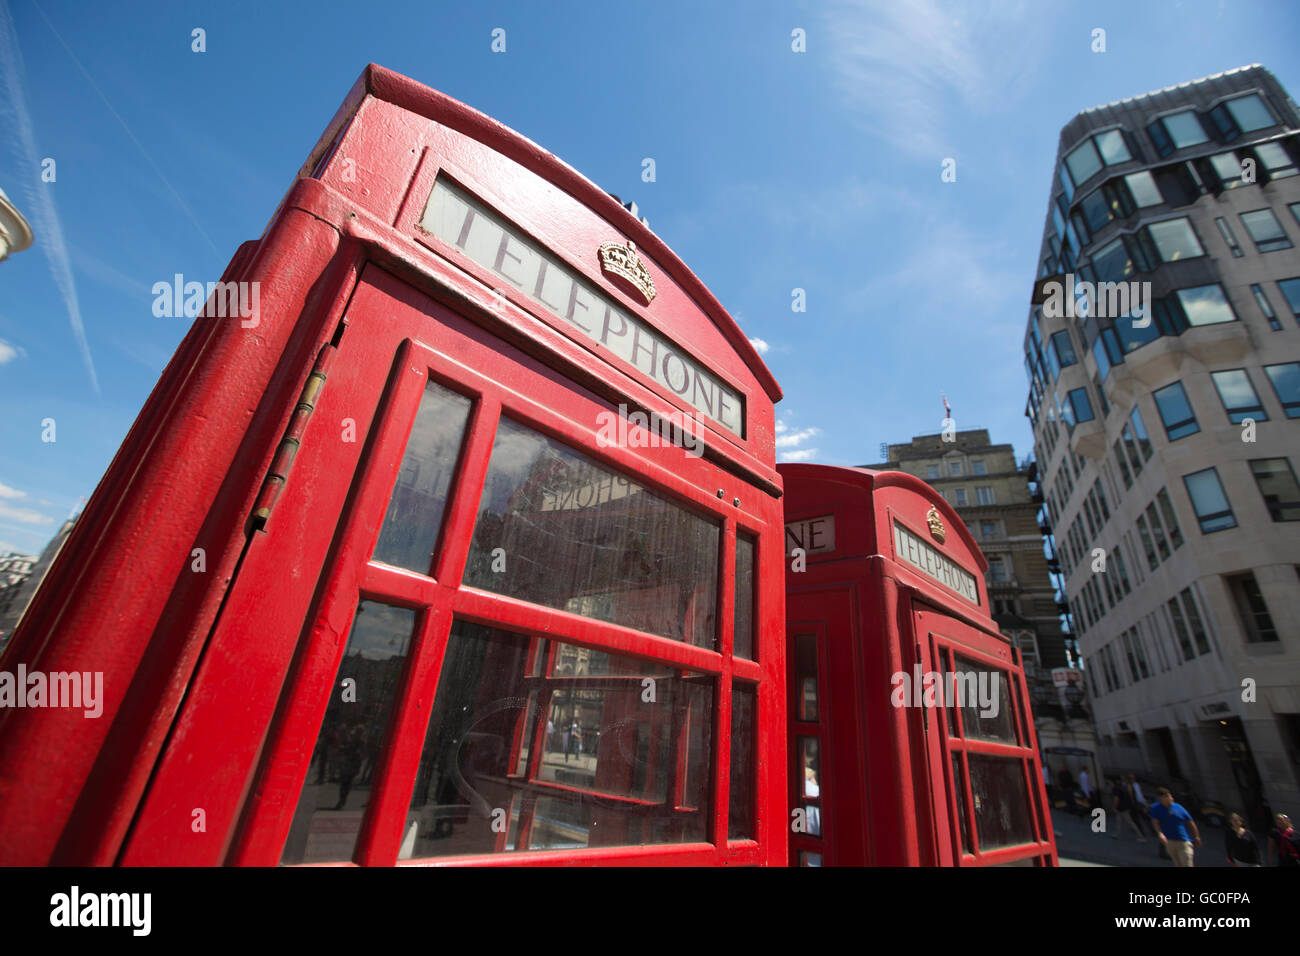 Rote Telefonzellen in einer Linie außerhalb Charing Cross train Station, London, England, UK Stockfoto